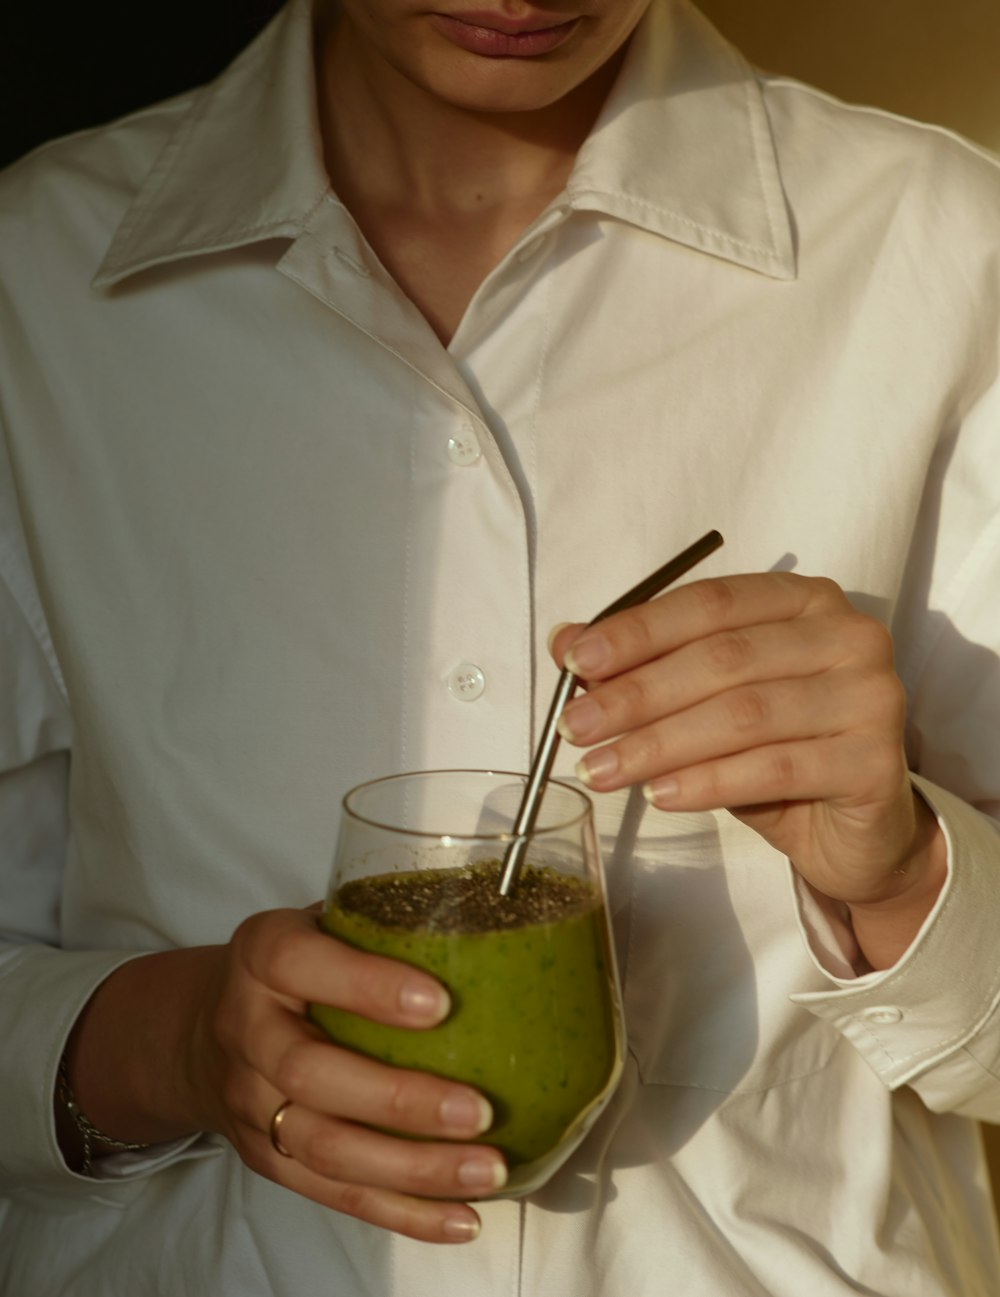 흰색 버튼 업 셔츠를 입은 사람이 녹색 액체가 든 투명한 음료수 유리를 들고 있다